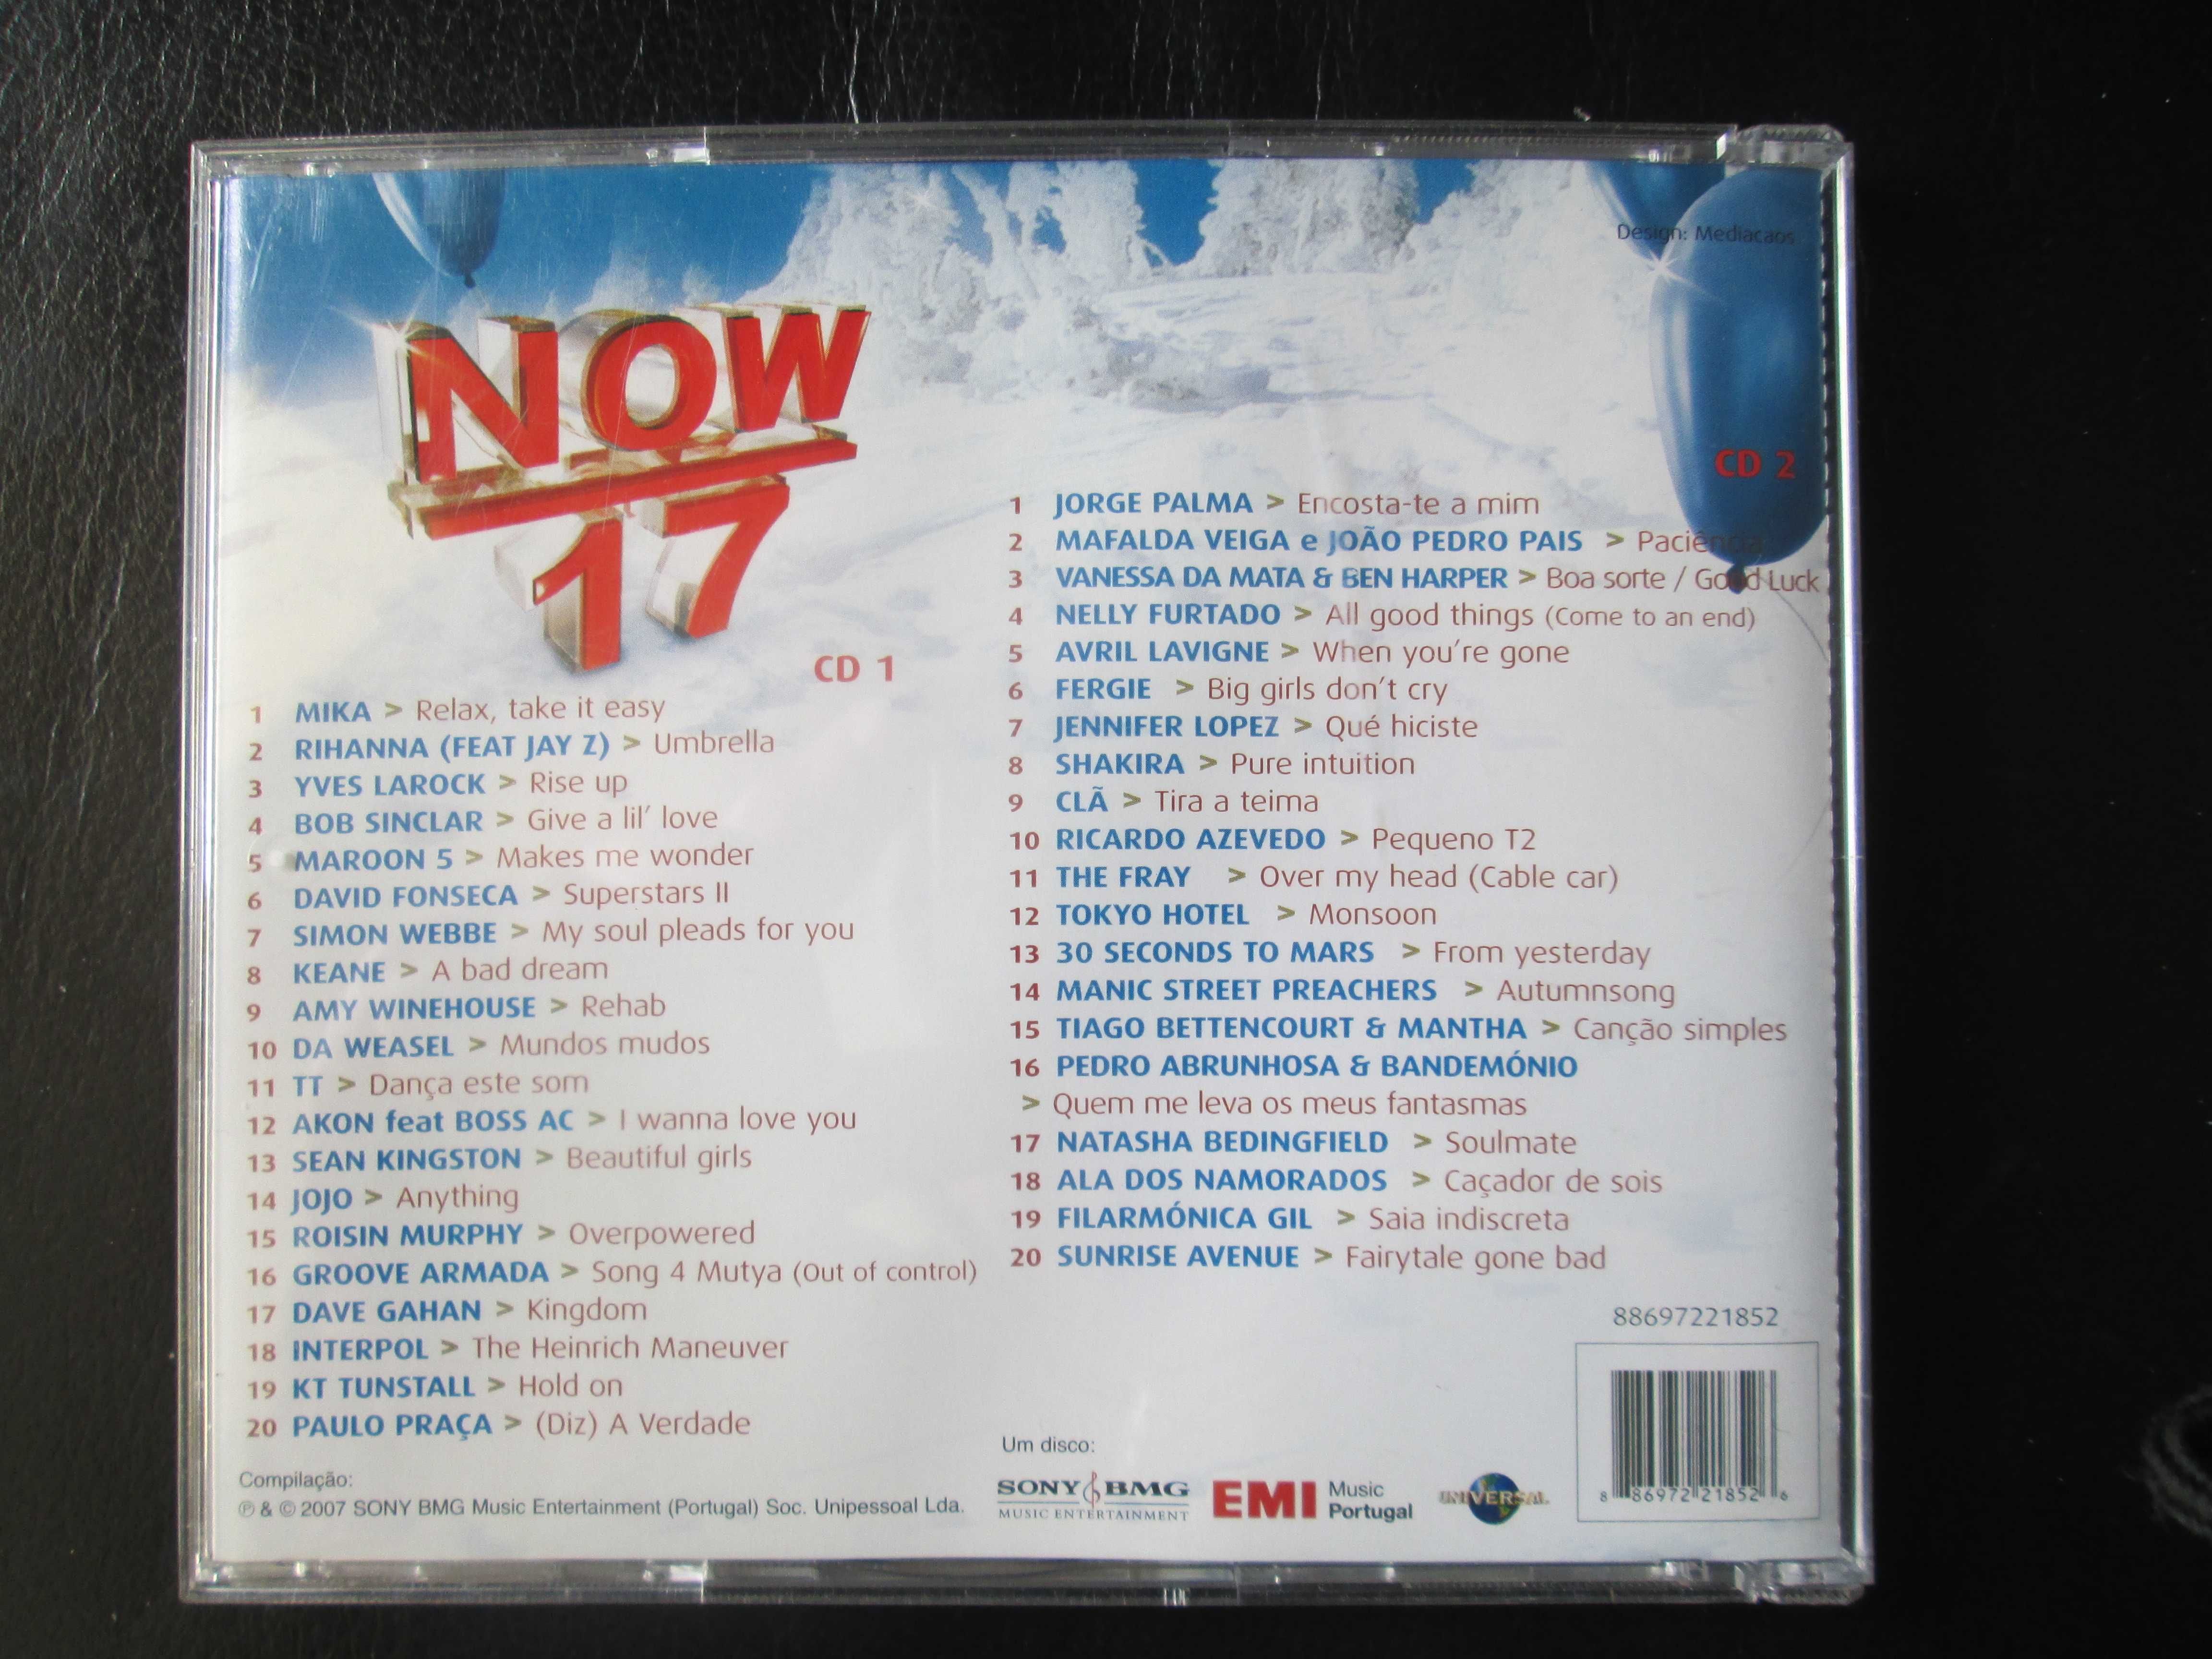 CD duplo - Now 17, como novo - com 40 temas